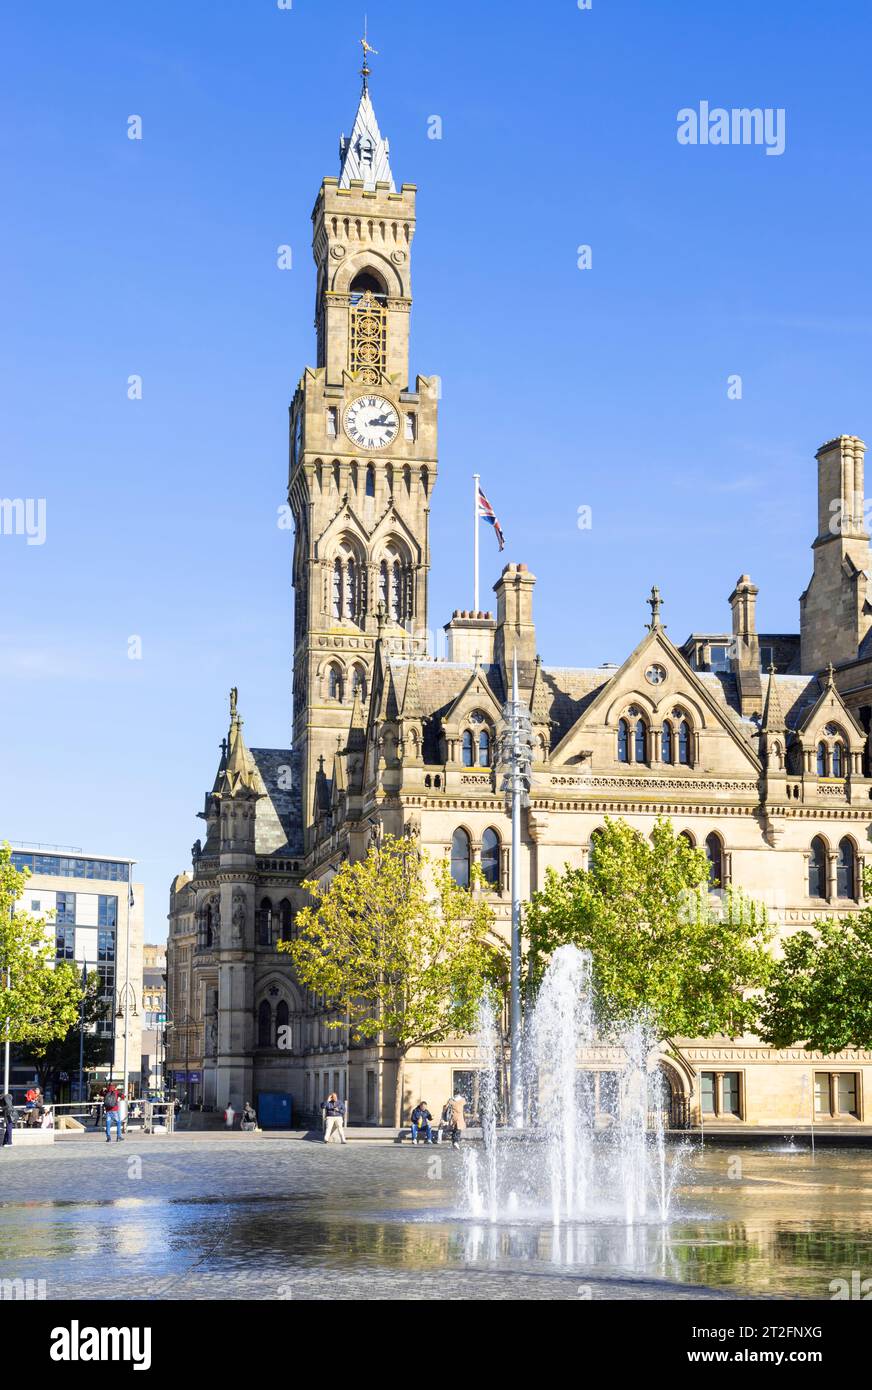 Bradford Town Hall horloge Tour ou Bradford City Hall dans le centre-ville de Bradford Centenary Square avec fontaines Bradford Yorkshire Angleterre Royaume-Uni GB Europe Banque D'Images